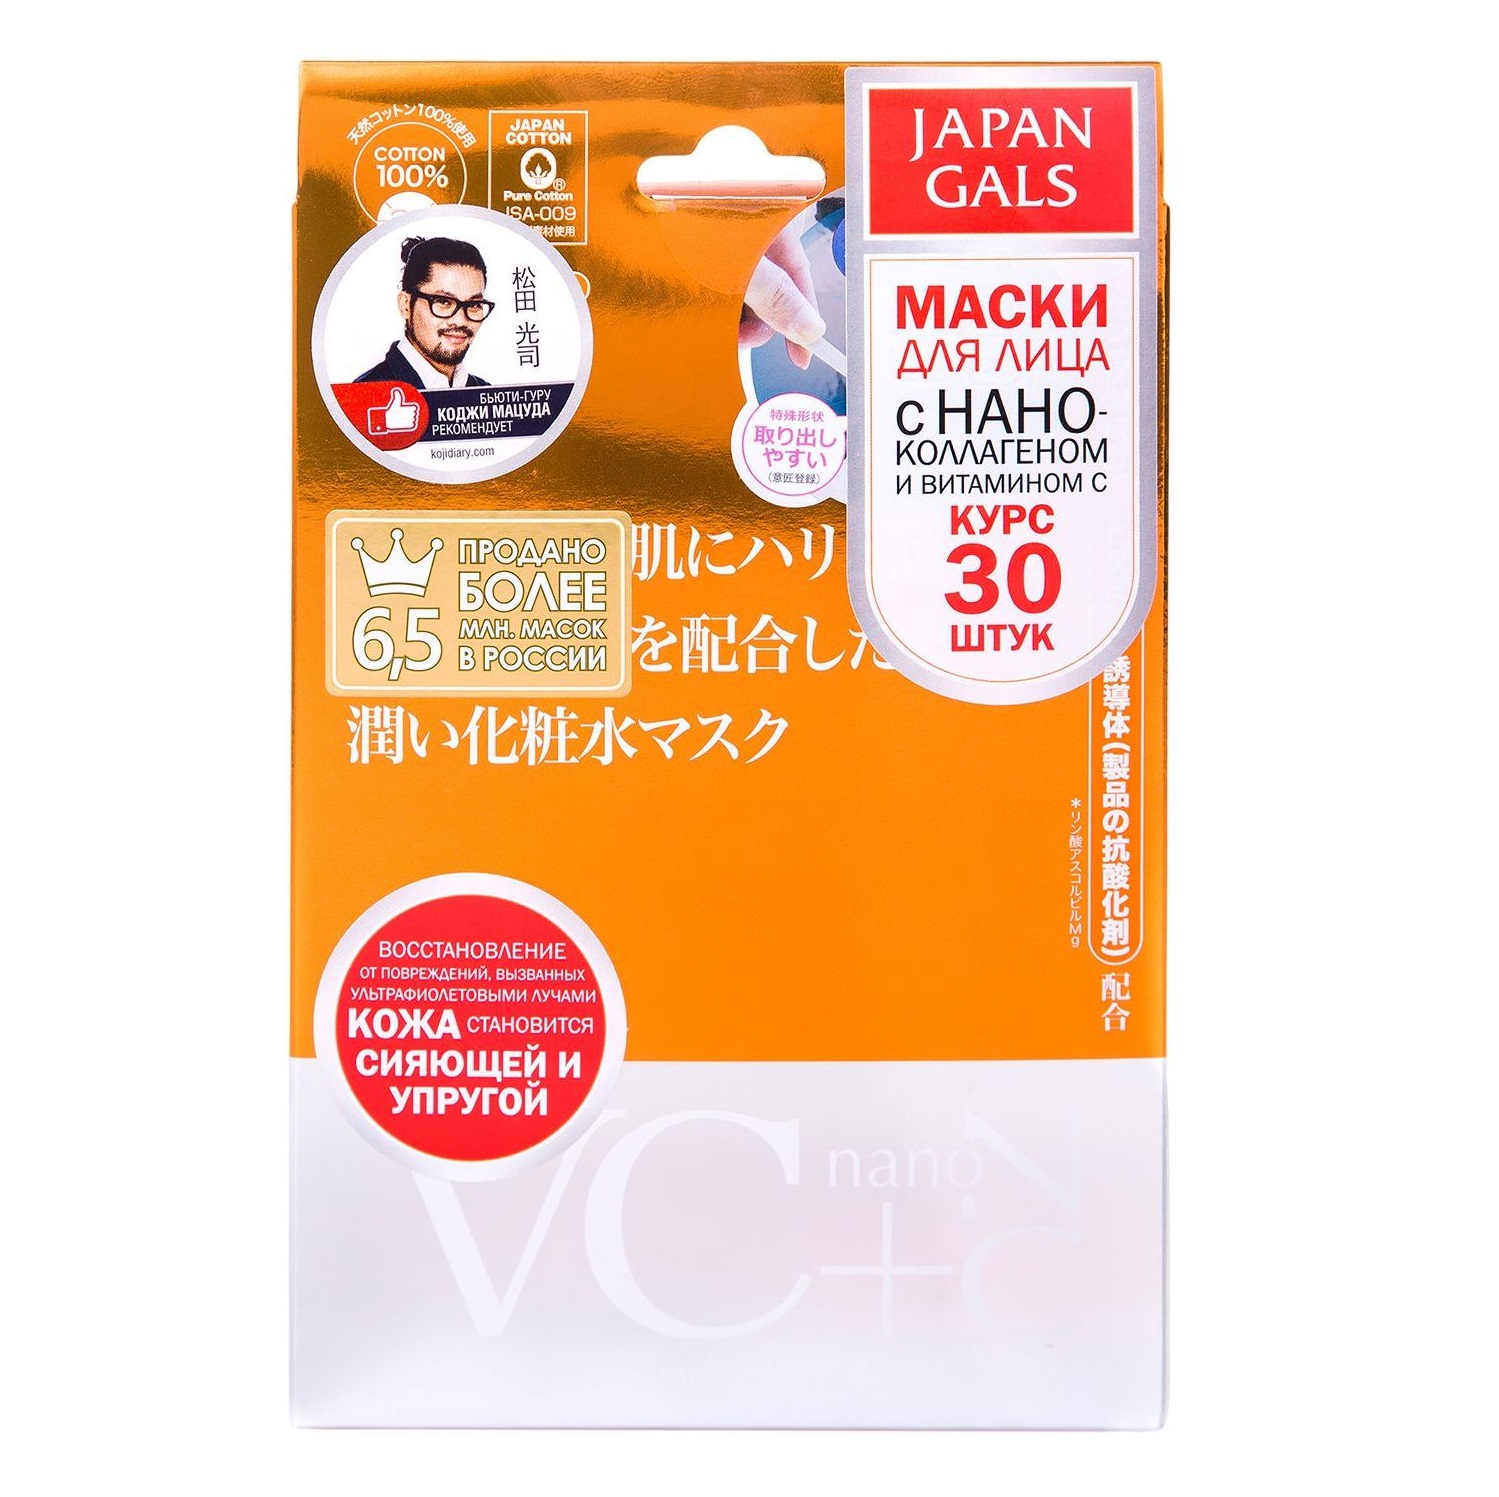 Маска Japan Gals Витамин С + Нано-коллаген 30 шт коллаген 20 мл